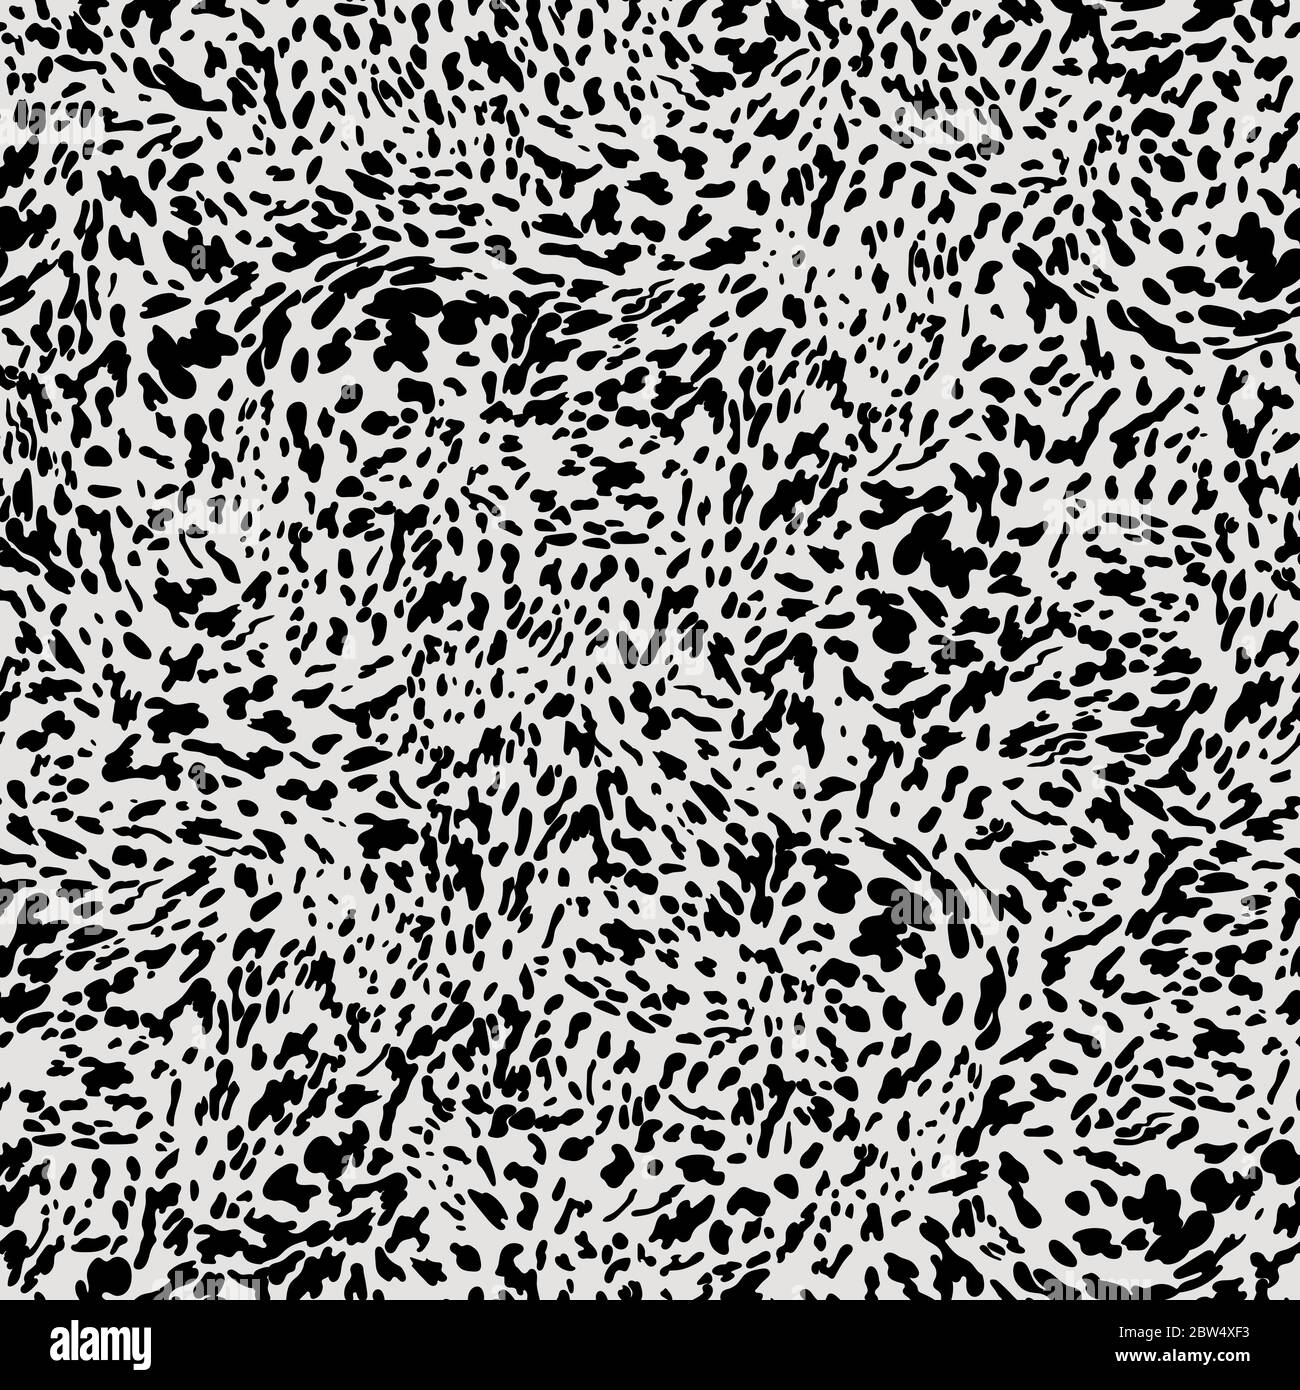 Appaloosa Tierdruck Nahtloses Muster-Design. Leopard, Rindsleder, Pferdehaut Muster mit kleinen schwarzen Flecken auf weißem Hintergrund. Tiermuster Stock Vektor